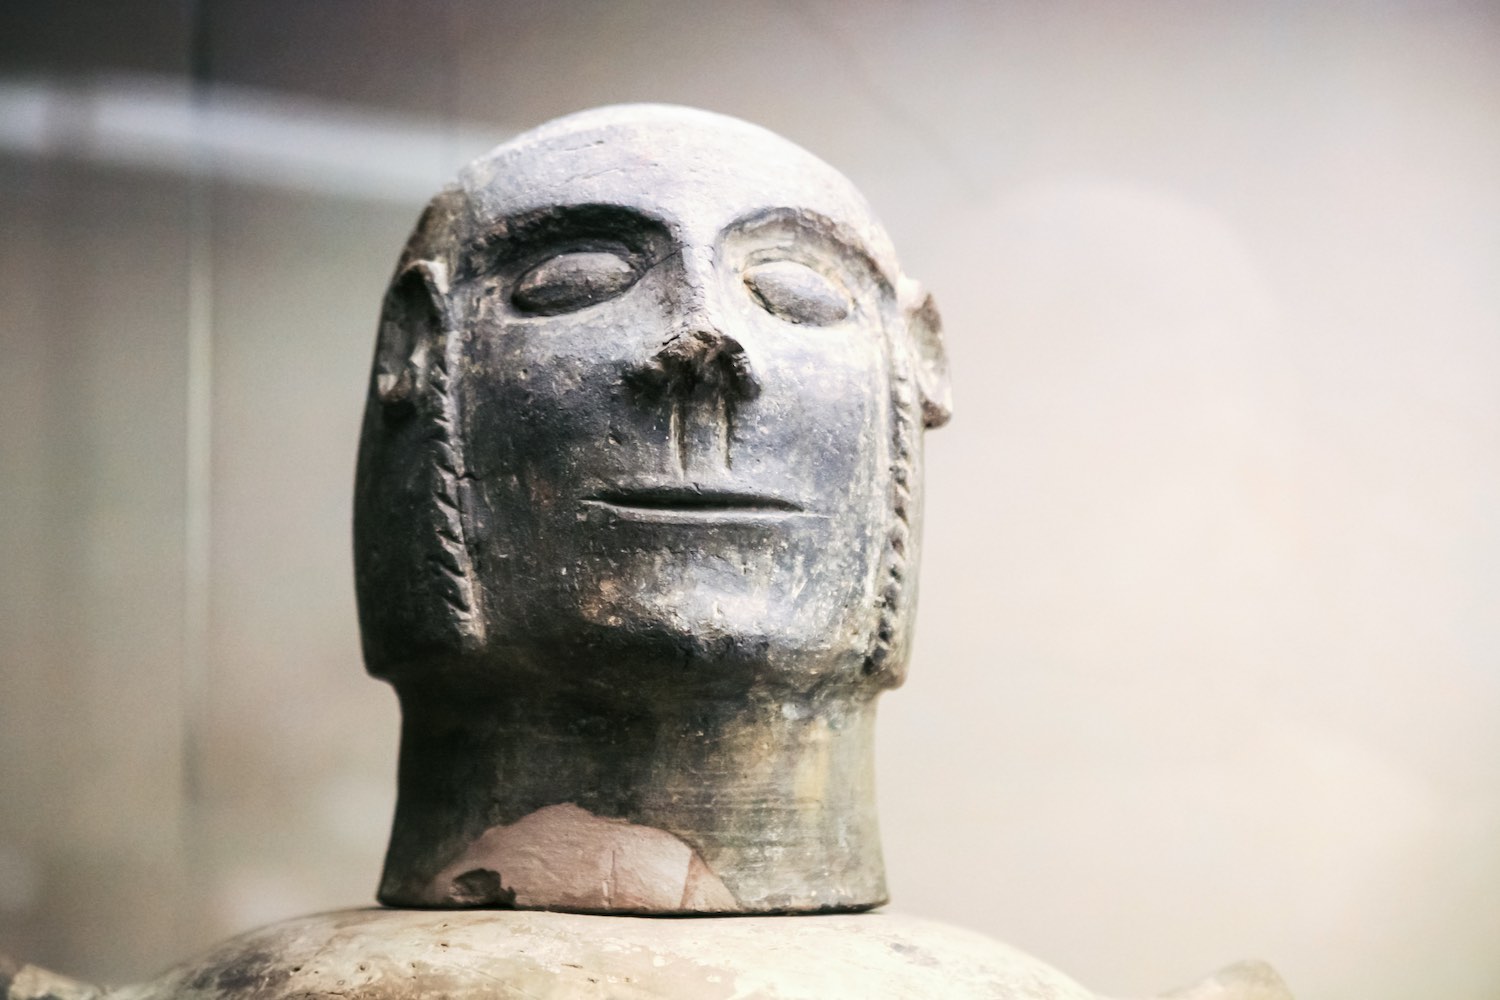 Una testa etrusca rinvenuta in uno dei tanti scavi archeologici della Toscana